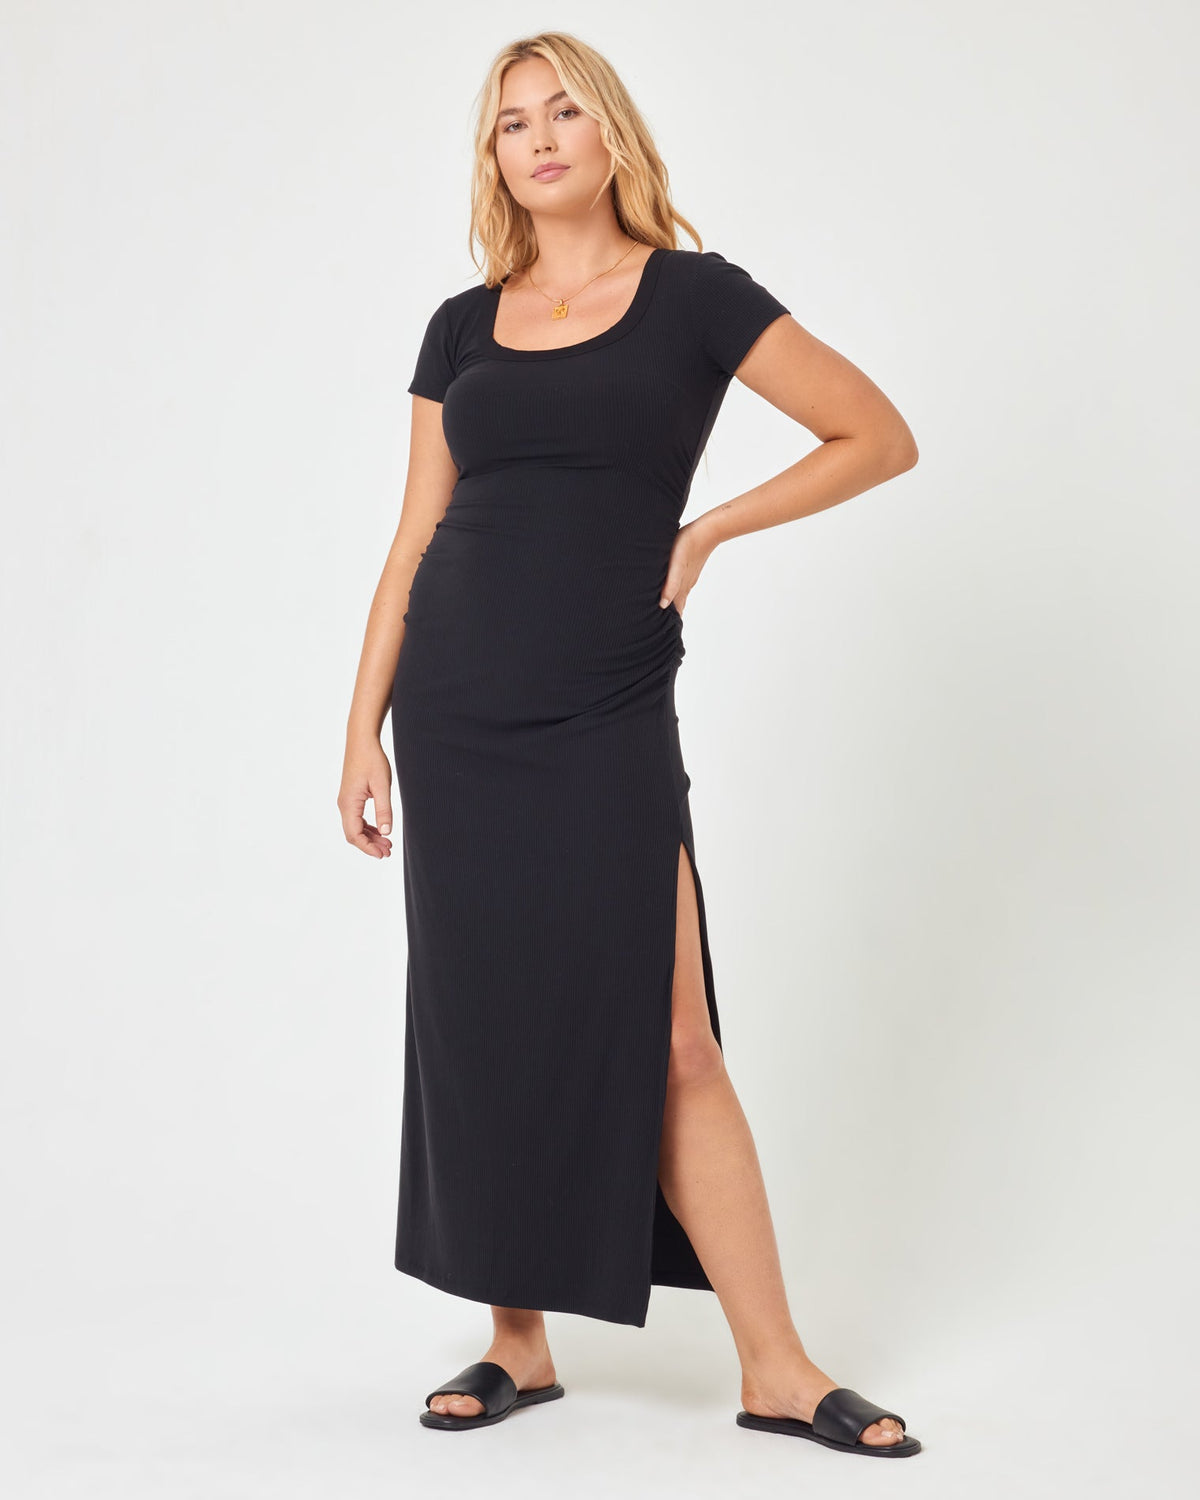 Valencia Dress Black | Model: Sydney (size: XL)